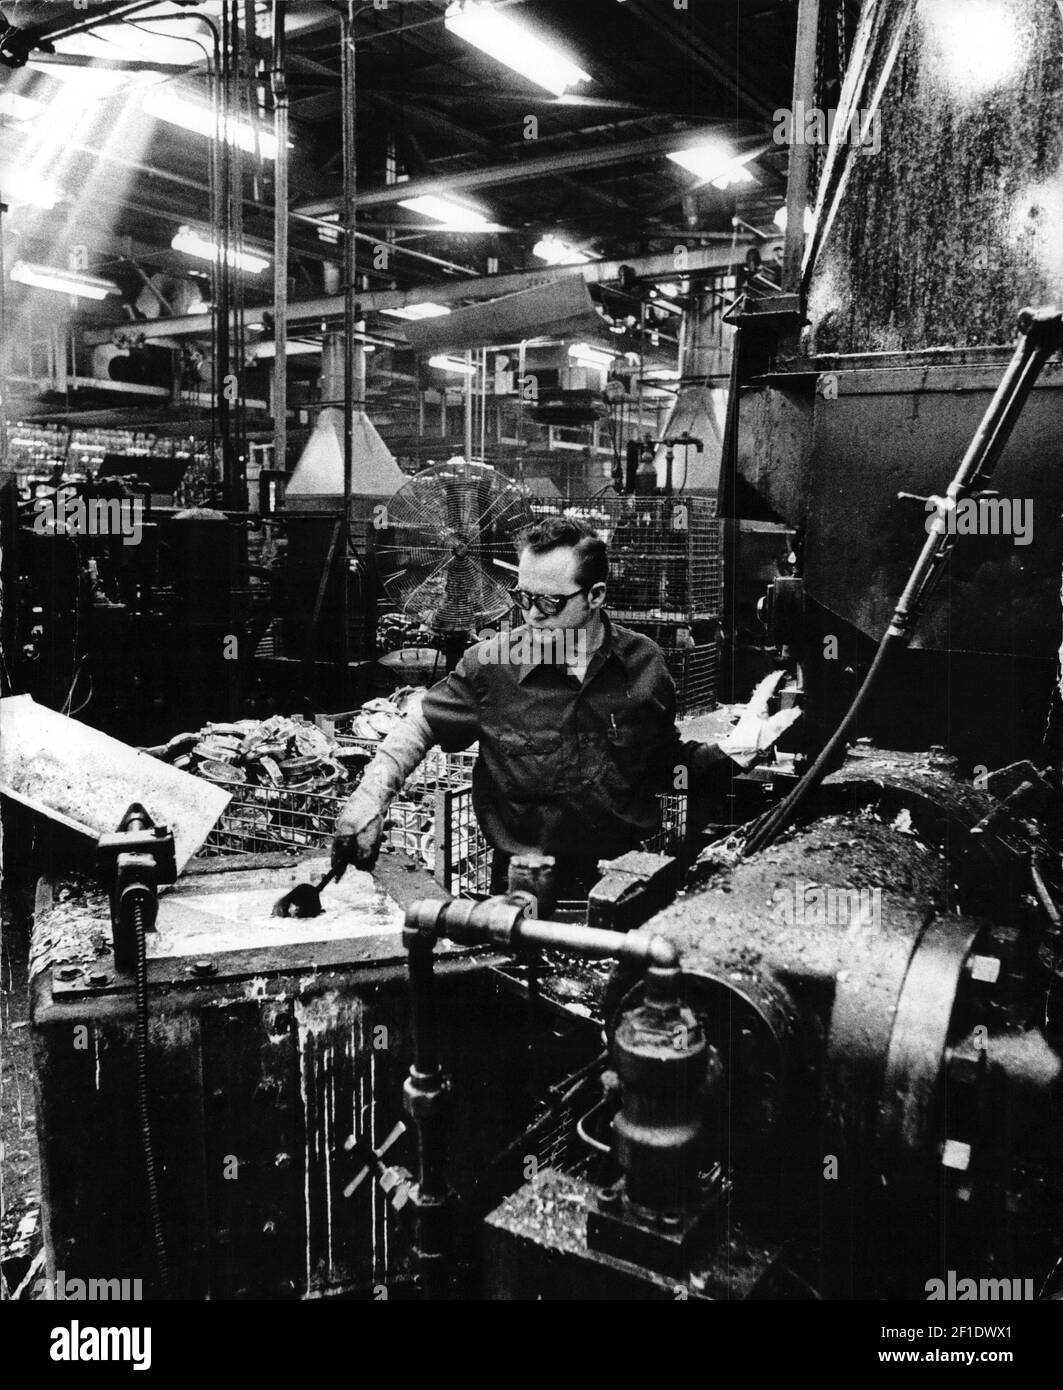 14 de marzo de 1973; Milwaukee, WI, EE.UU.; La zona de fundición de aluminio de Briggs & Stratton en 1973. Crédito obligatorio: Milwaukee Journal Sentinel a través de EE.UU. HOY RED / Sipa EE.UU Foto de stock